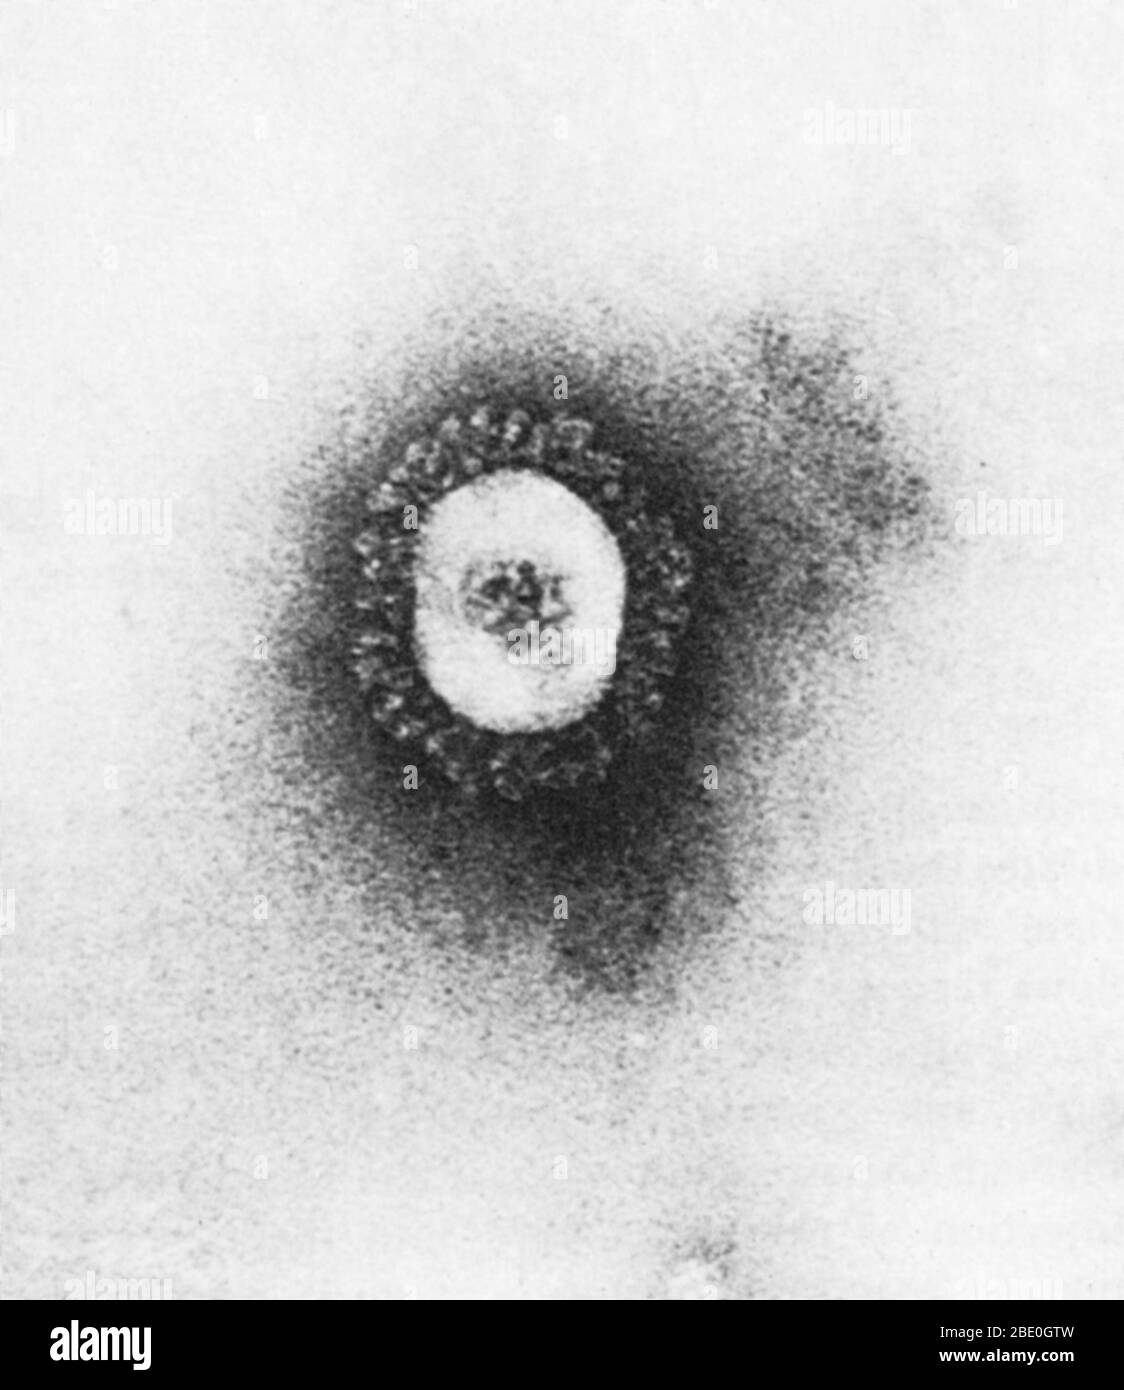 Micrografia elettronica a trasmissione (TEM) di un coronavirus, che causa il raffreddore comune. I coronavirus sono specie di virus appartenenti alla sottofamiglia Coronavirinae della famiglia Coronaviridae, nell'ordine Nidovirales. I coronavirus sono virus con involucro con un genoma di RNA a singolo filamento e senso positivo e con un nucleocapside di simmetria elicoidale. La dimensione genomica dei coronavirus varia da circa 26 a 32 kilobasi, la più grande per un virus di RNA. Foto Stock